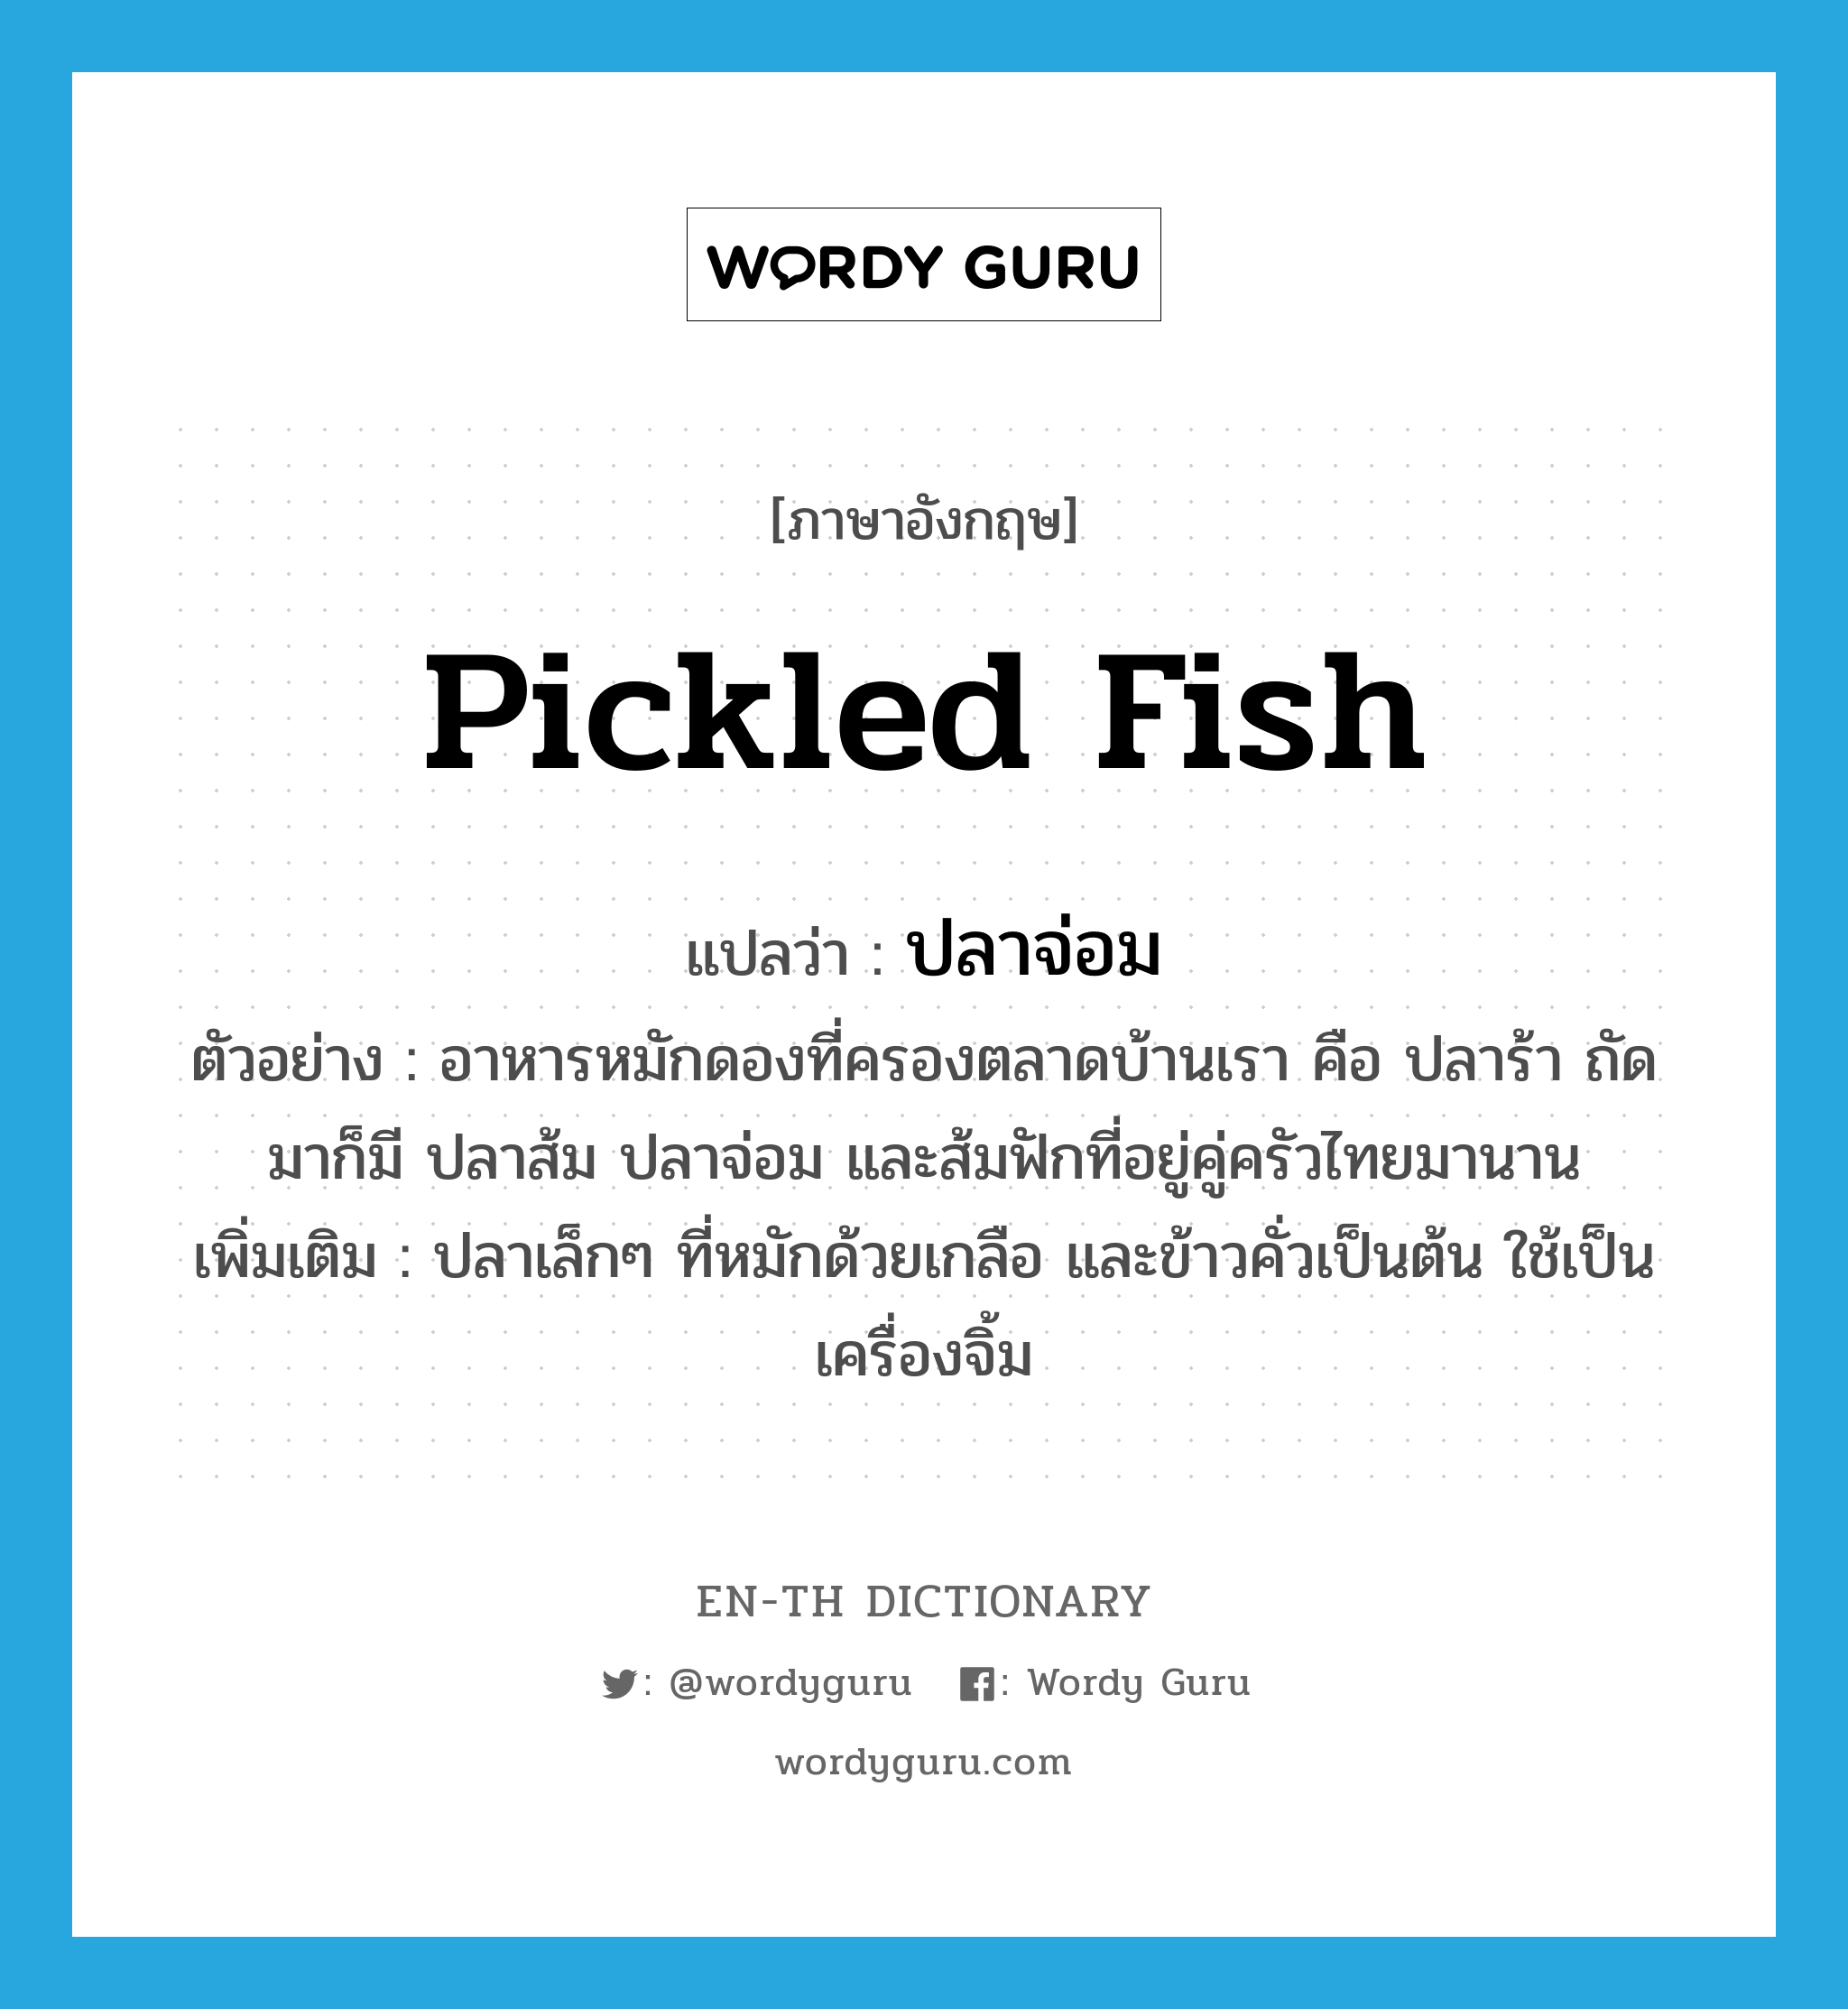 pickled fish แปลว่า?, คำศัพท์ภาษาอังกฤษ pickled fish แปลว่า ปลาจ่อม ประเภท N ตัวอย่าง อาหารหมักดองที่ครองตลาดบ้านเรา คือ ปลาร้า ถัดมาก็มี ปลาส้ม ปลาจ่อม และส้มฟักที่อยู่คู่ครัวไทยมานาน เพิ่มเติม ปลาเล็กๆ ที่หมักด้วยเกลือ และข้าวคั่วเป็นต้น ใช้เป็นเครื่องจิ้ม หมวด N